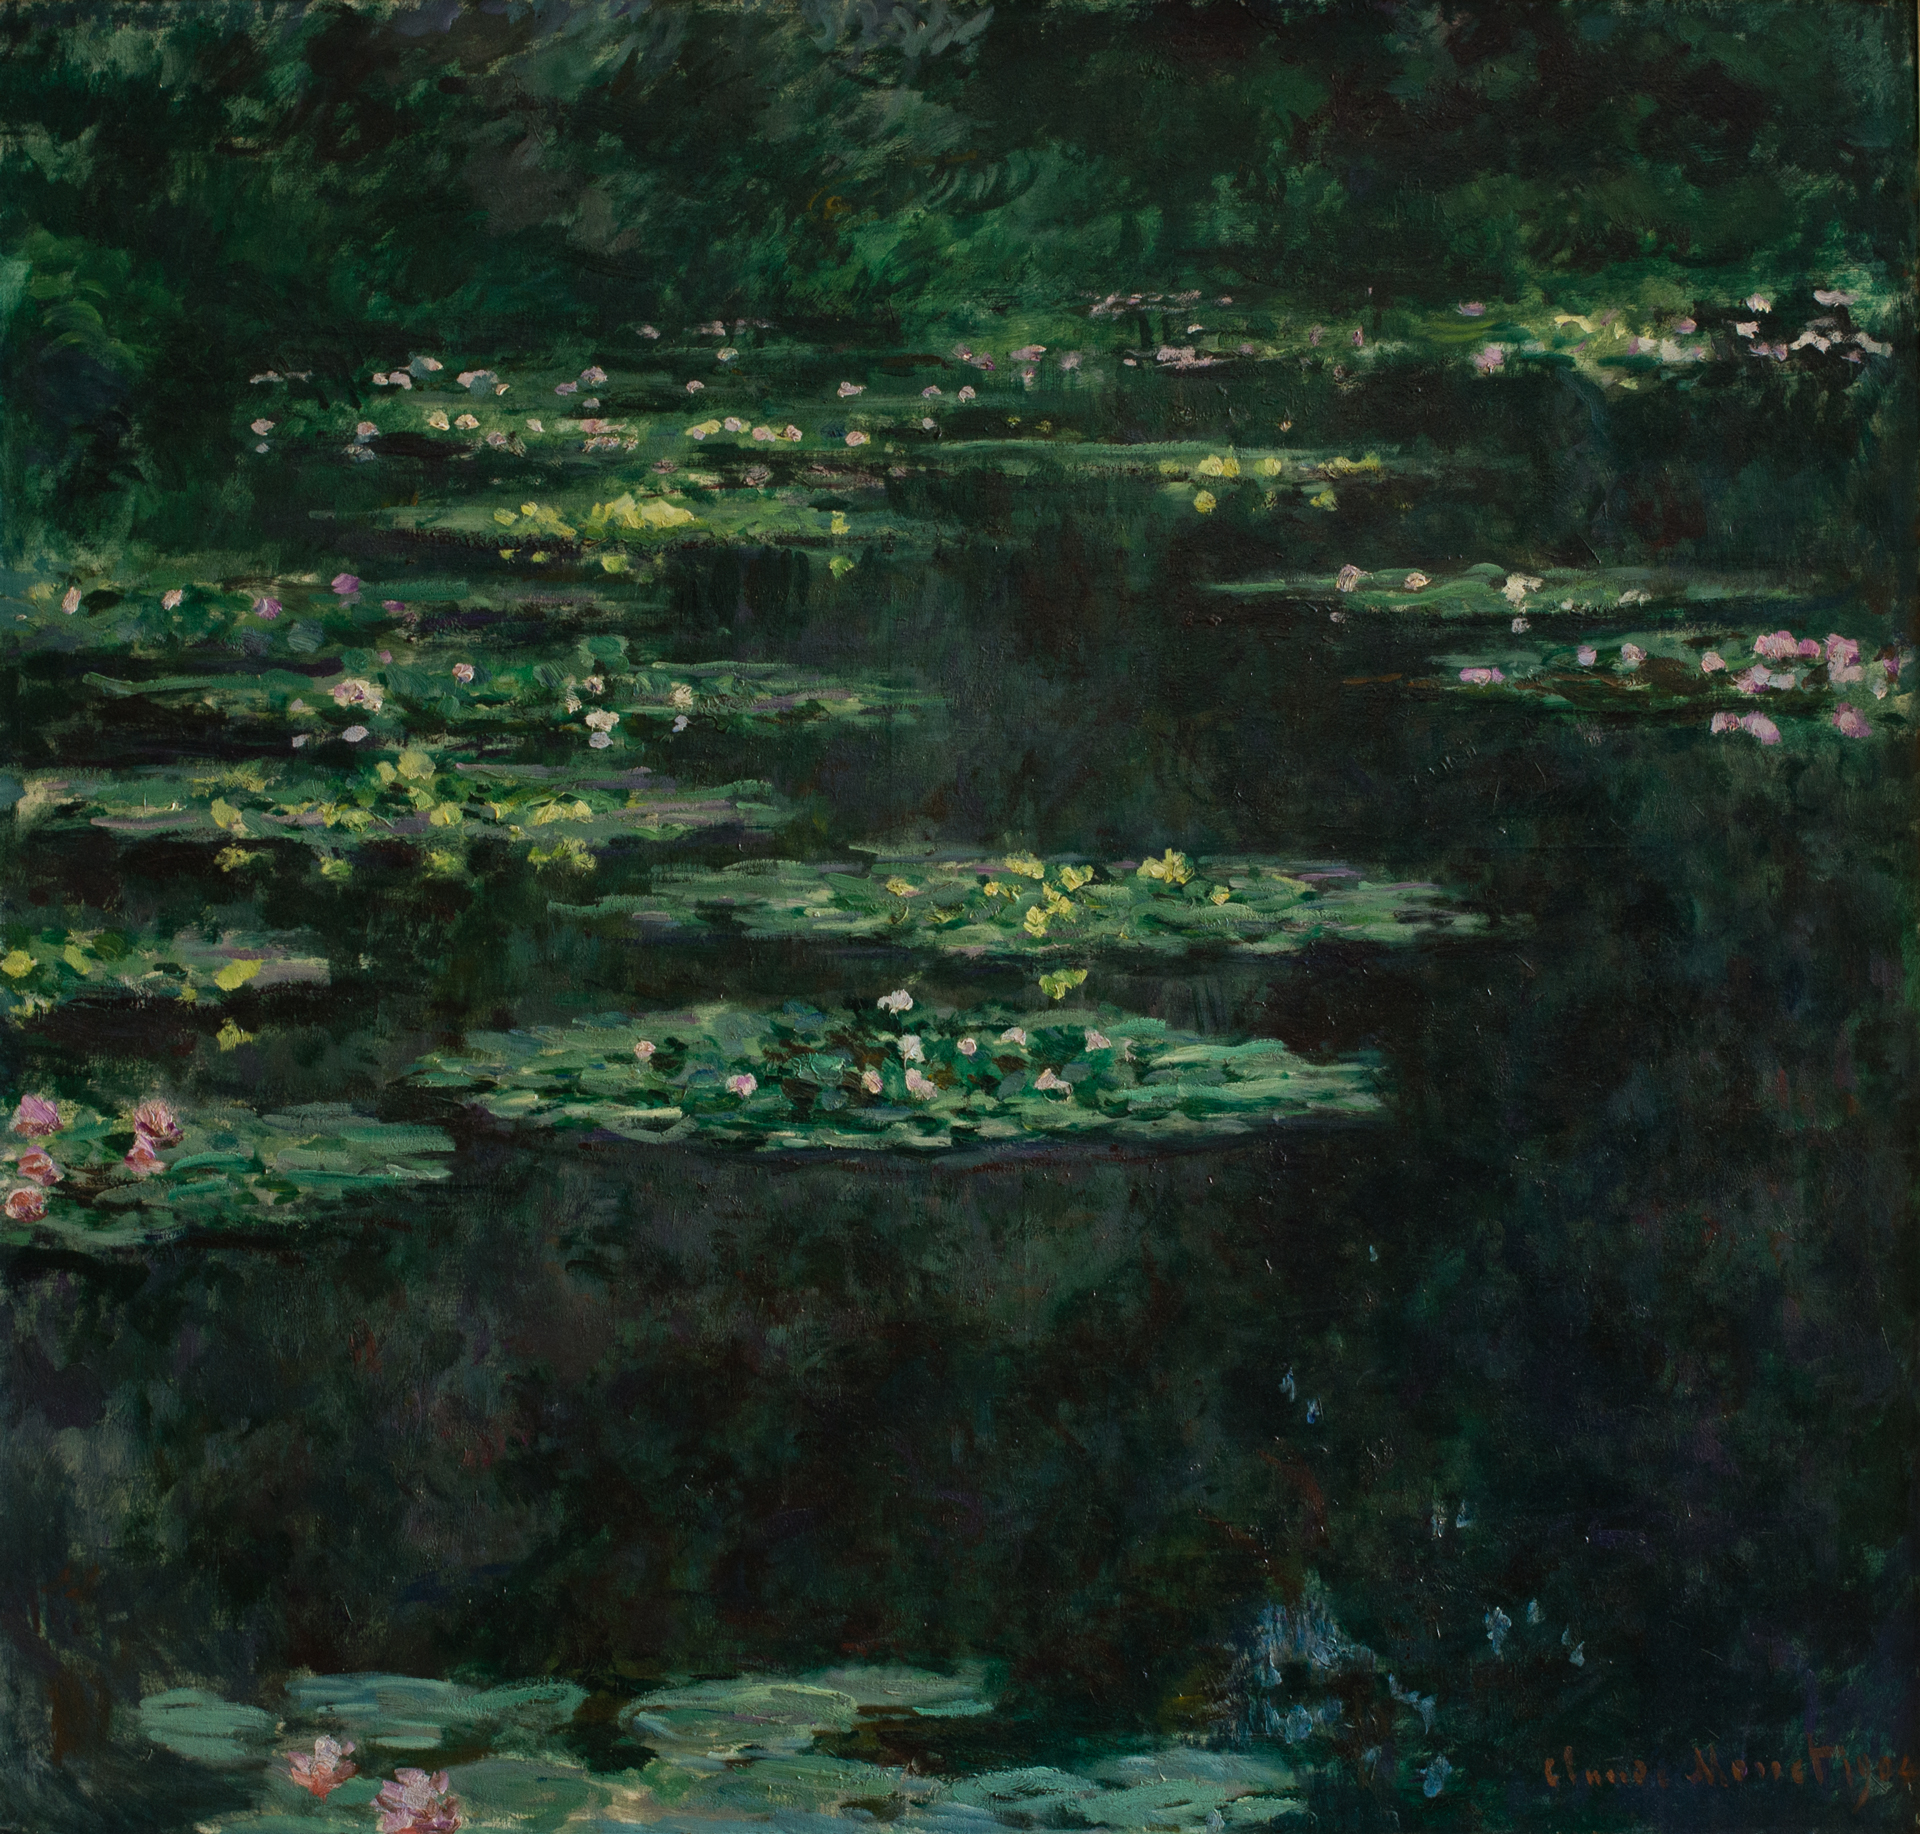 Claude Monet, "Les Nymphéas" © MuMa, David Fogel